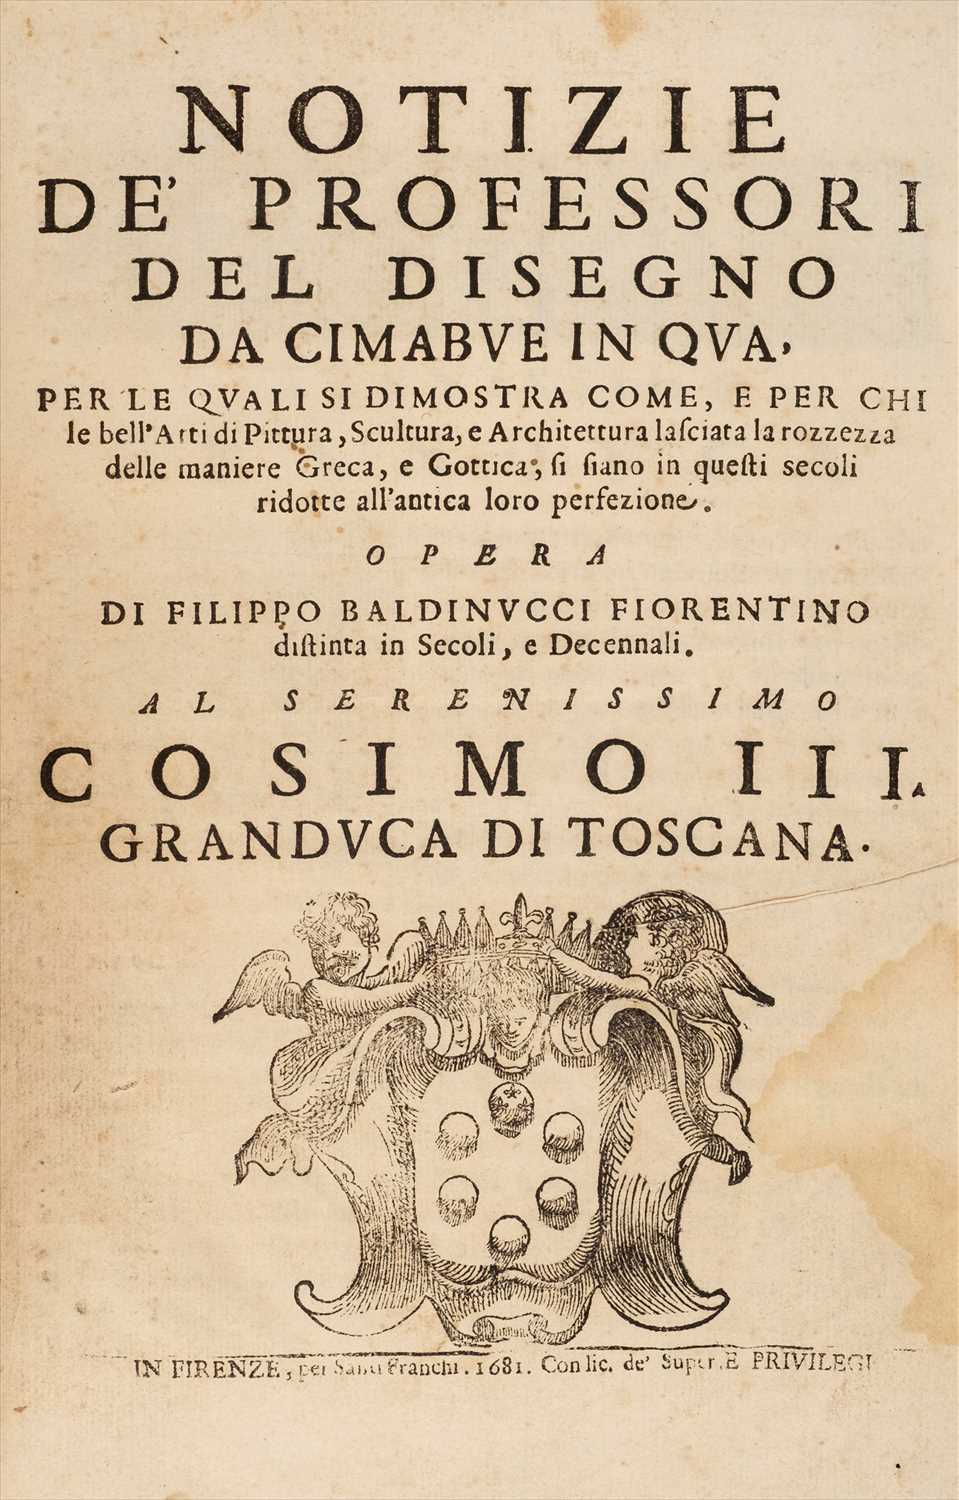 Lot 345 - Baldinucci (Filippo). Notizie de' Professori del Disegno da Cimabue in qua, 1st edition, 1681